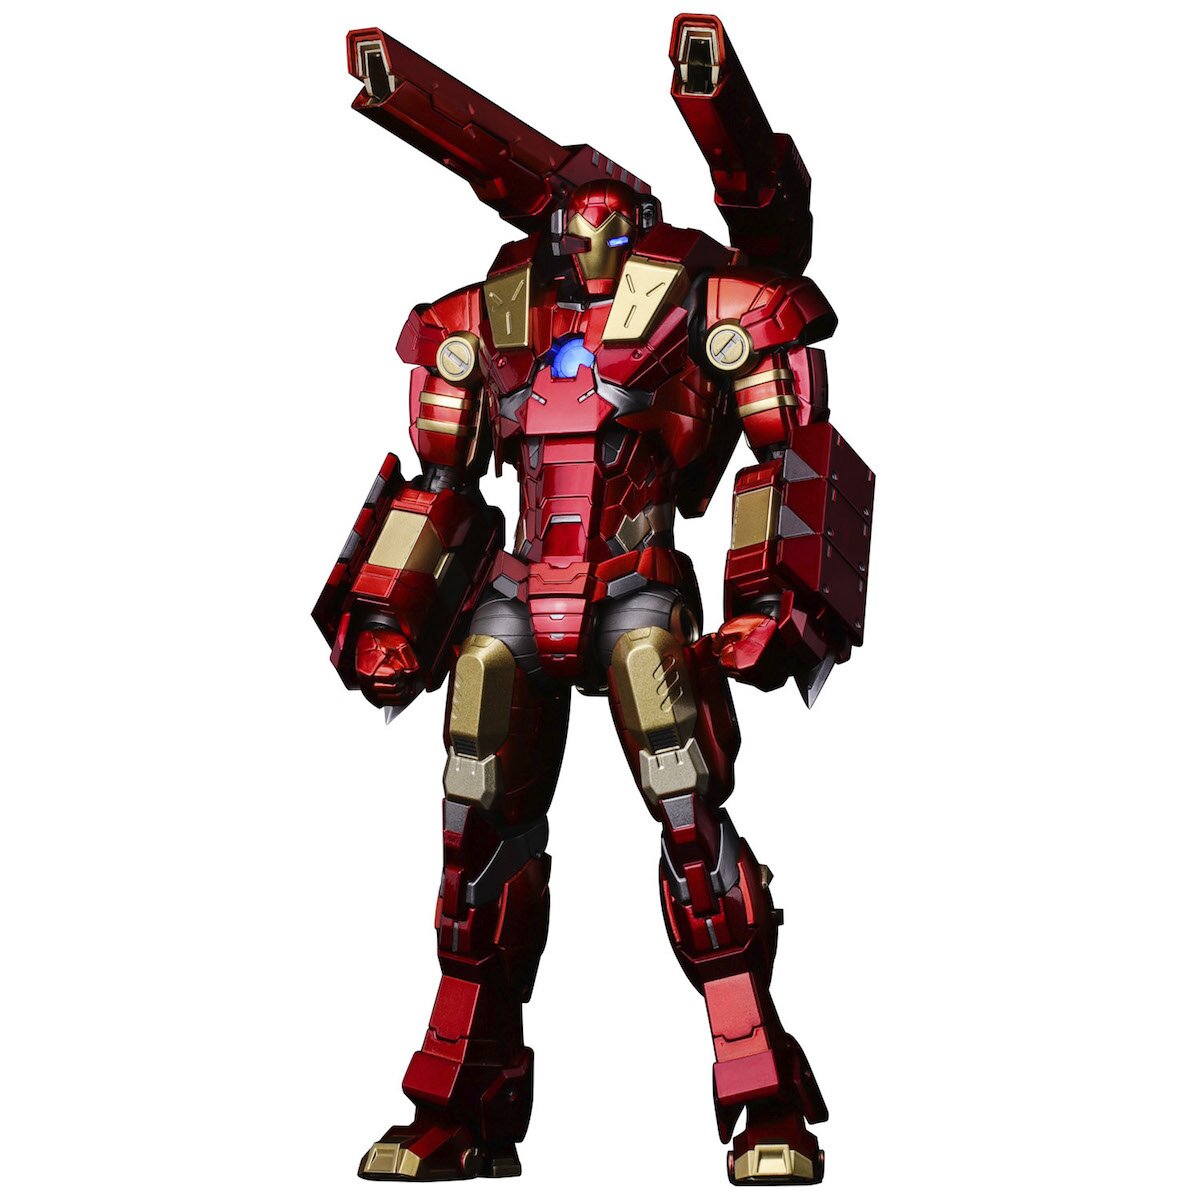 Re:Edit Iron Man #11: Modular Iron Man w/ Plasma Cannon & Vibroblade